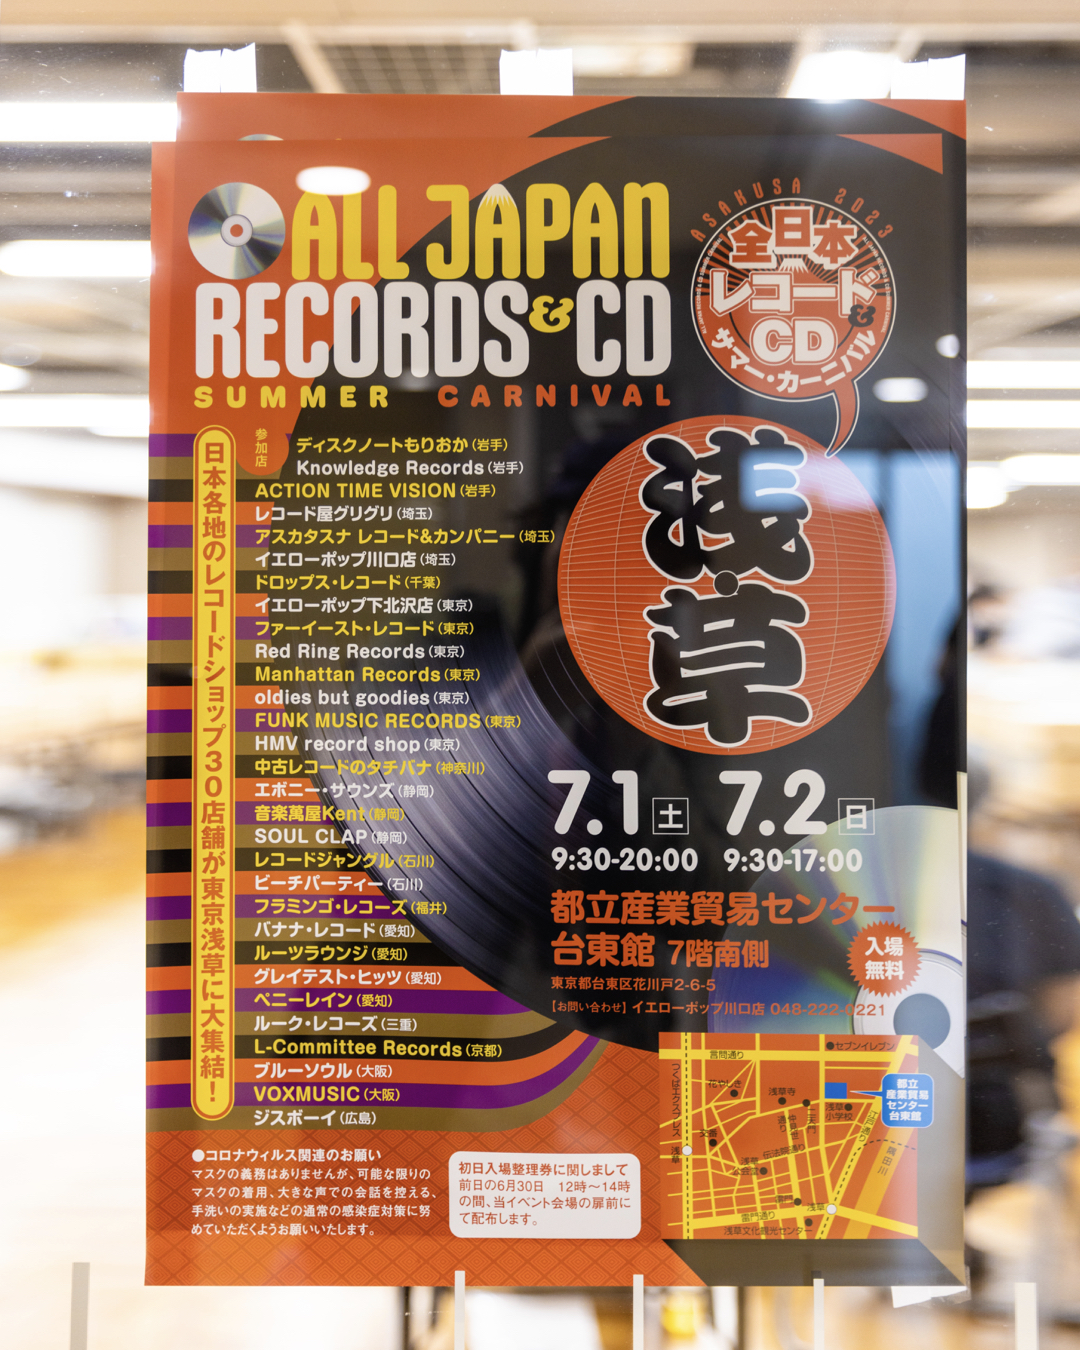 All Japan Records & CD Summer Carnival